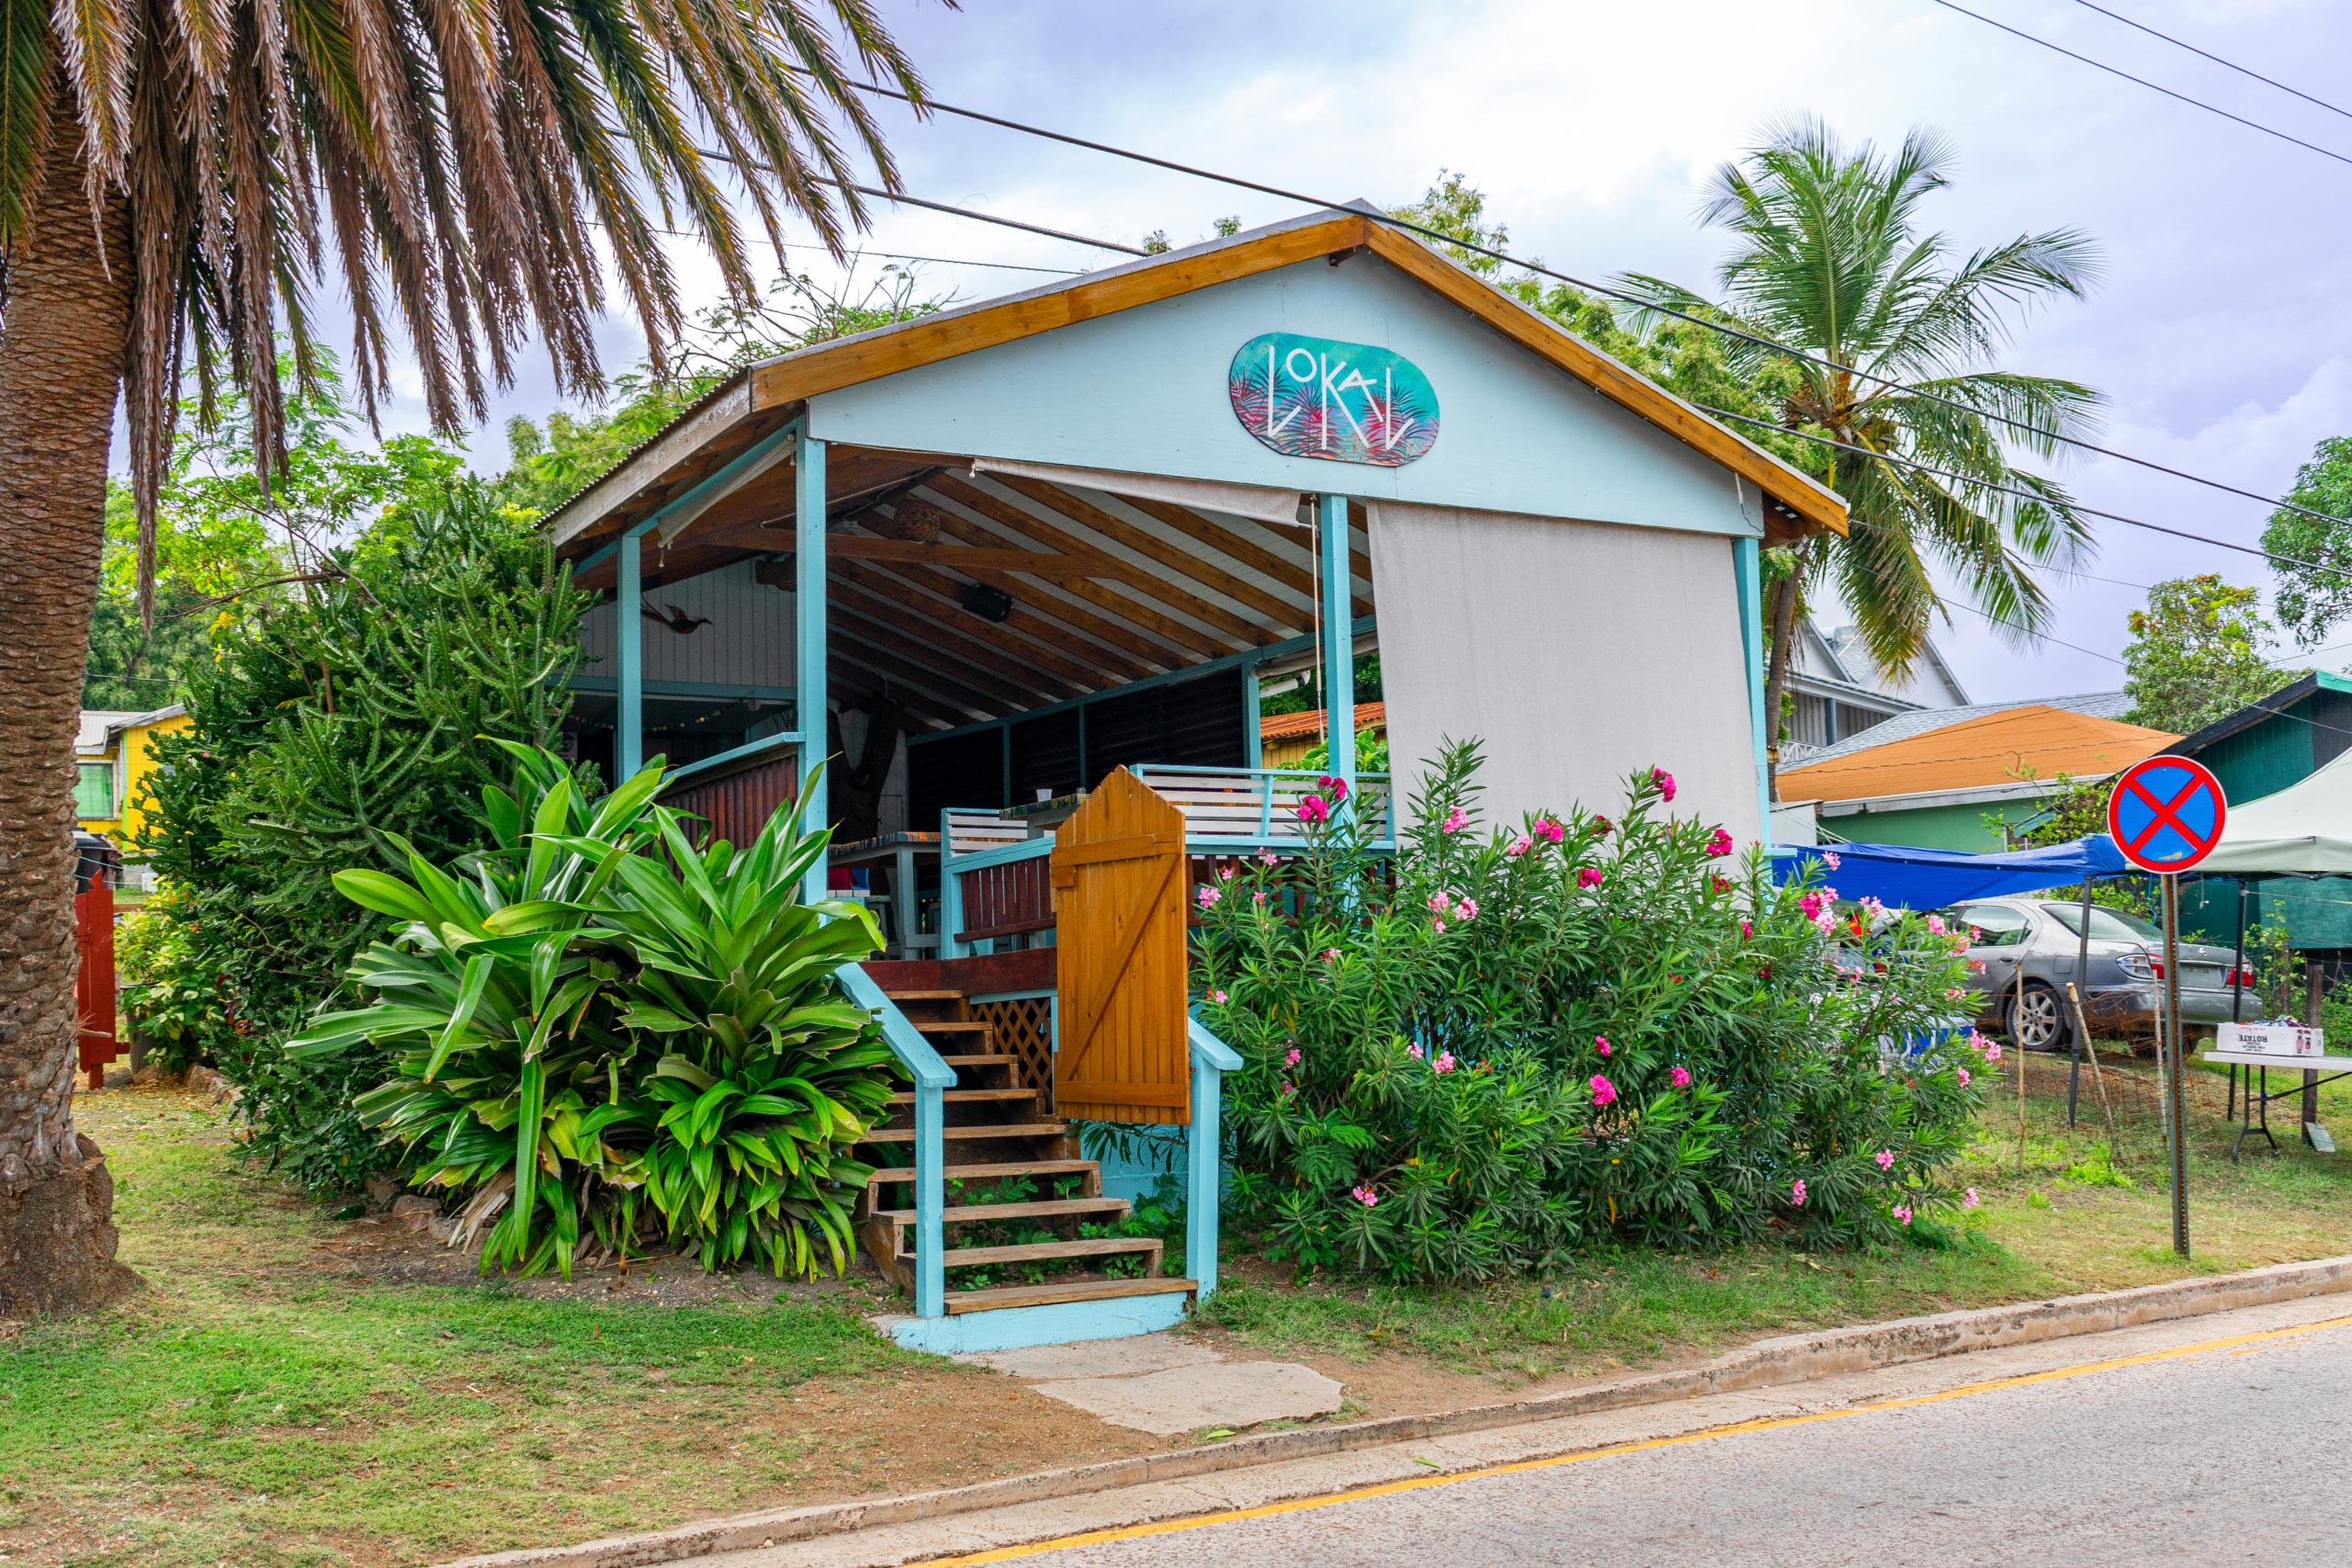 Lokal Bar and Restaurant, Antigua